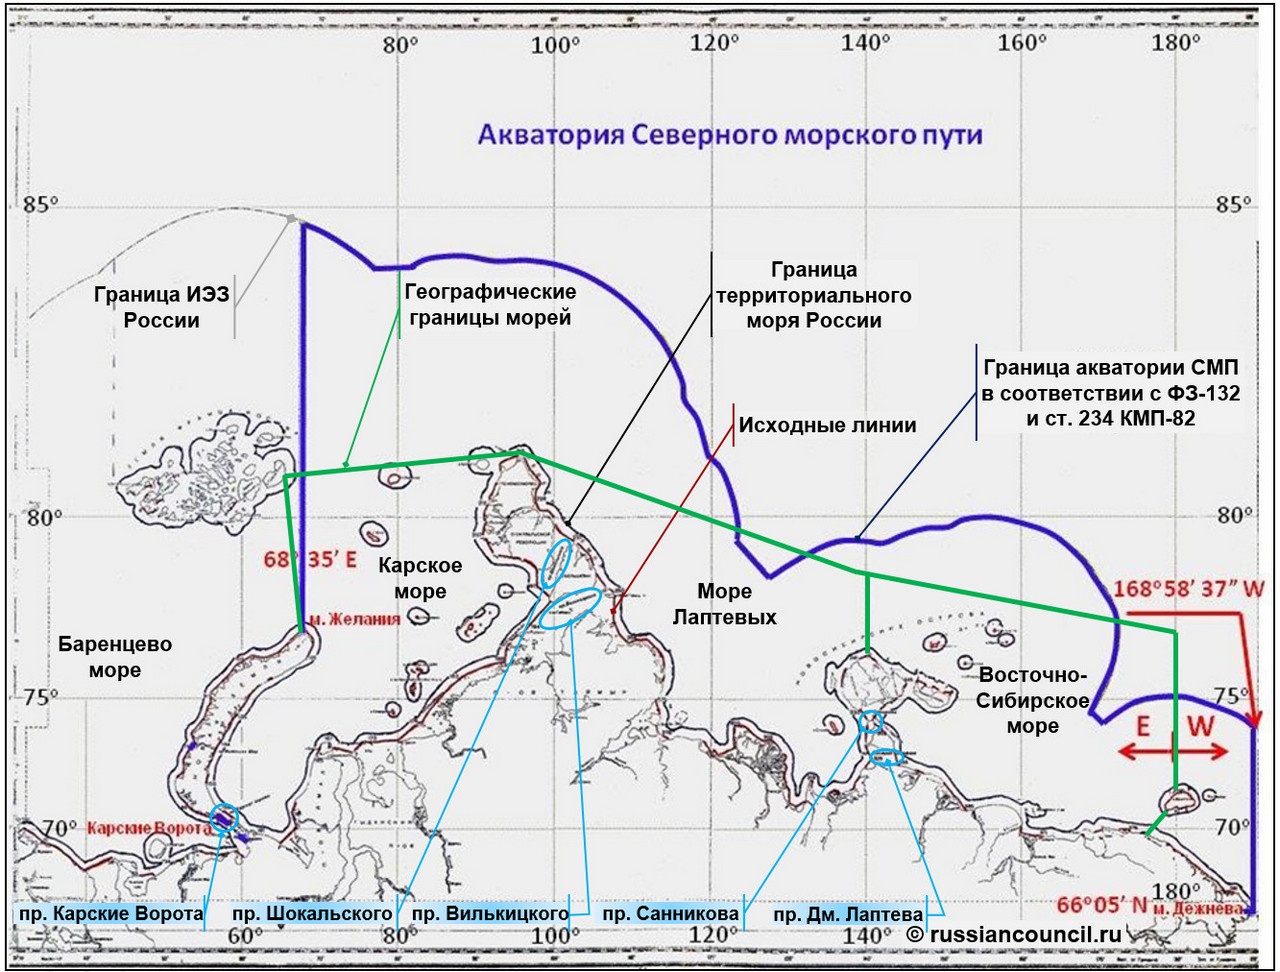 Деление морских пространств и акватория Северного морского пути.